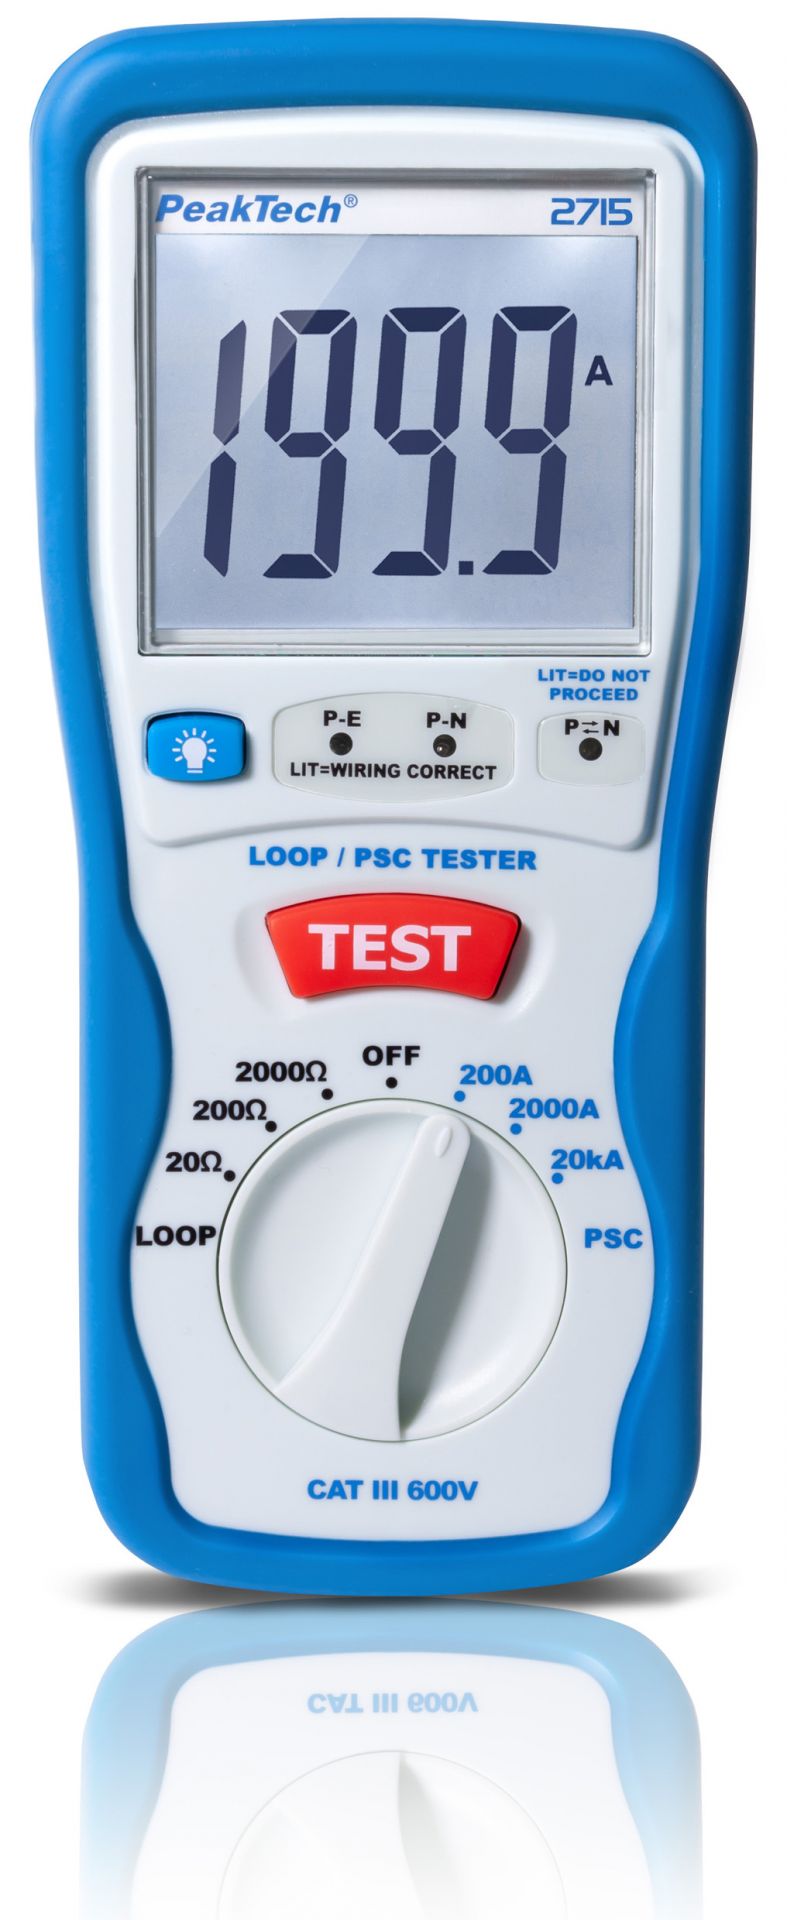 PeakTech 2715 Digital LOOP / PSC tester